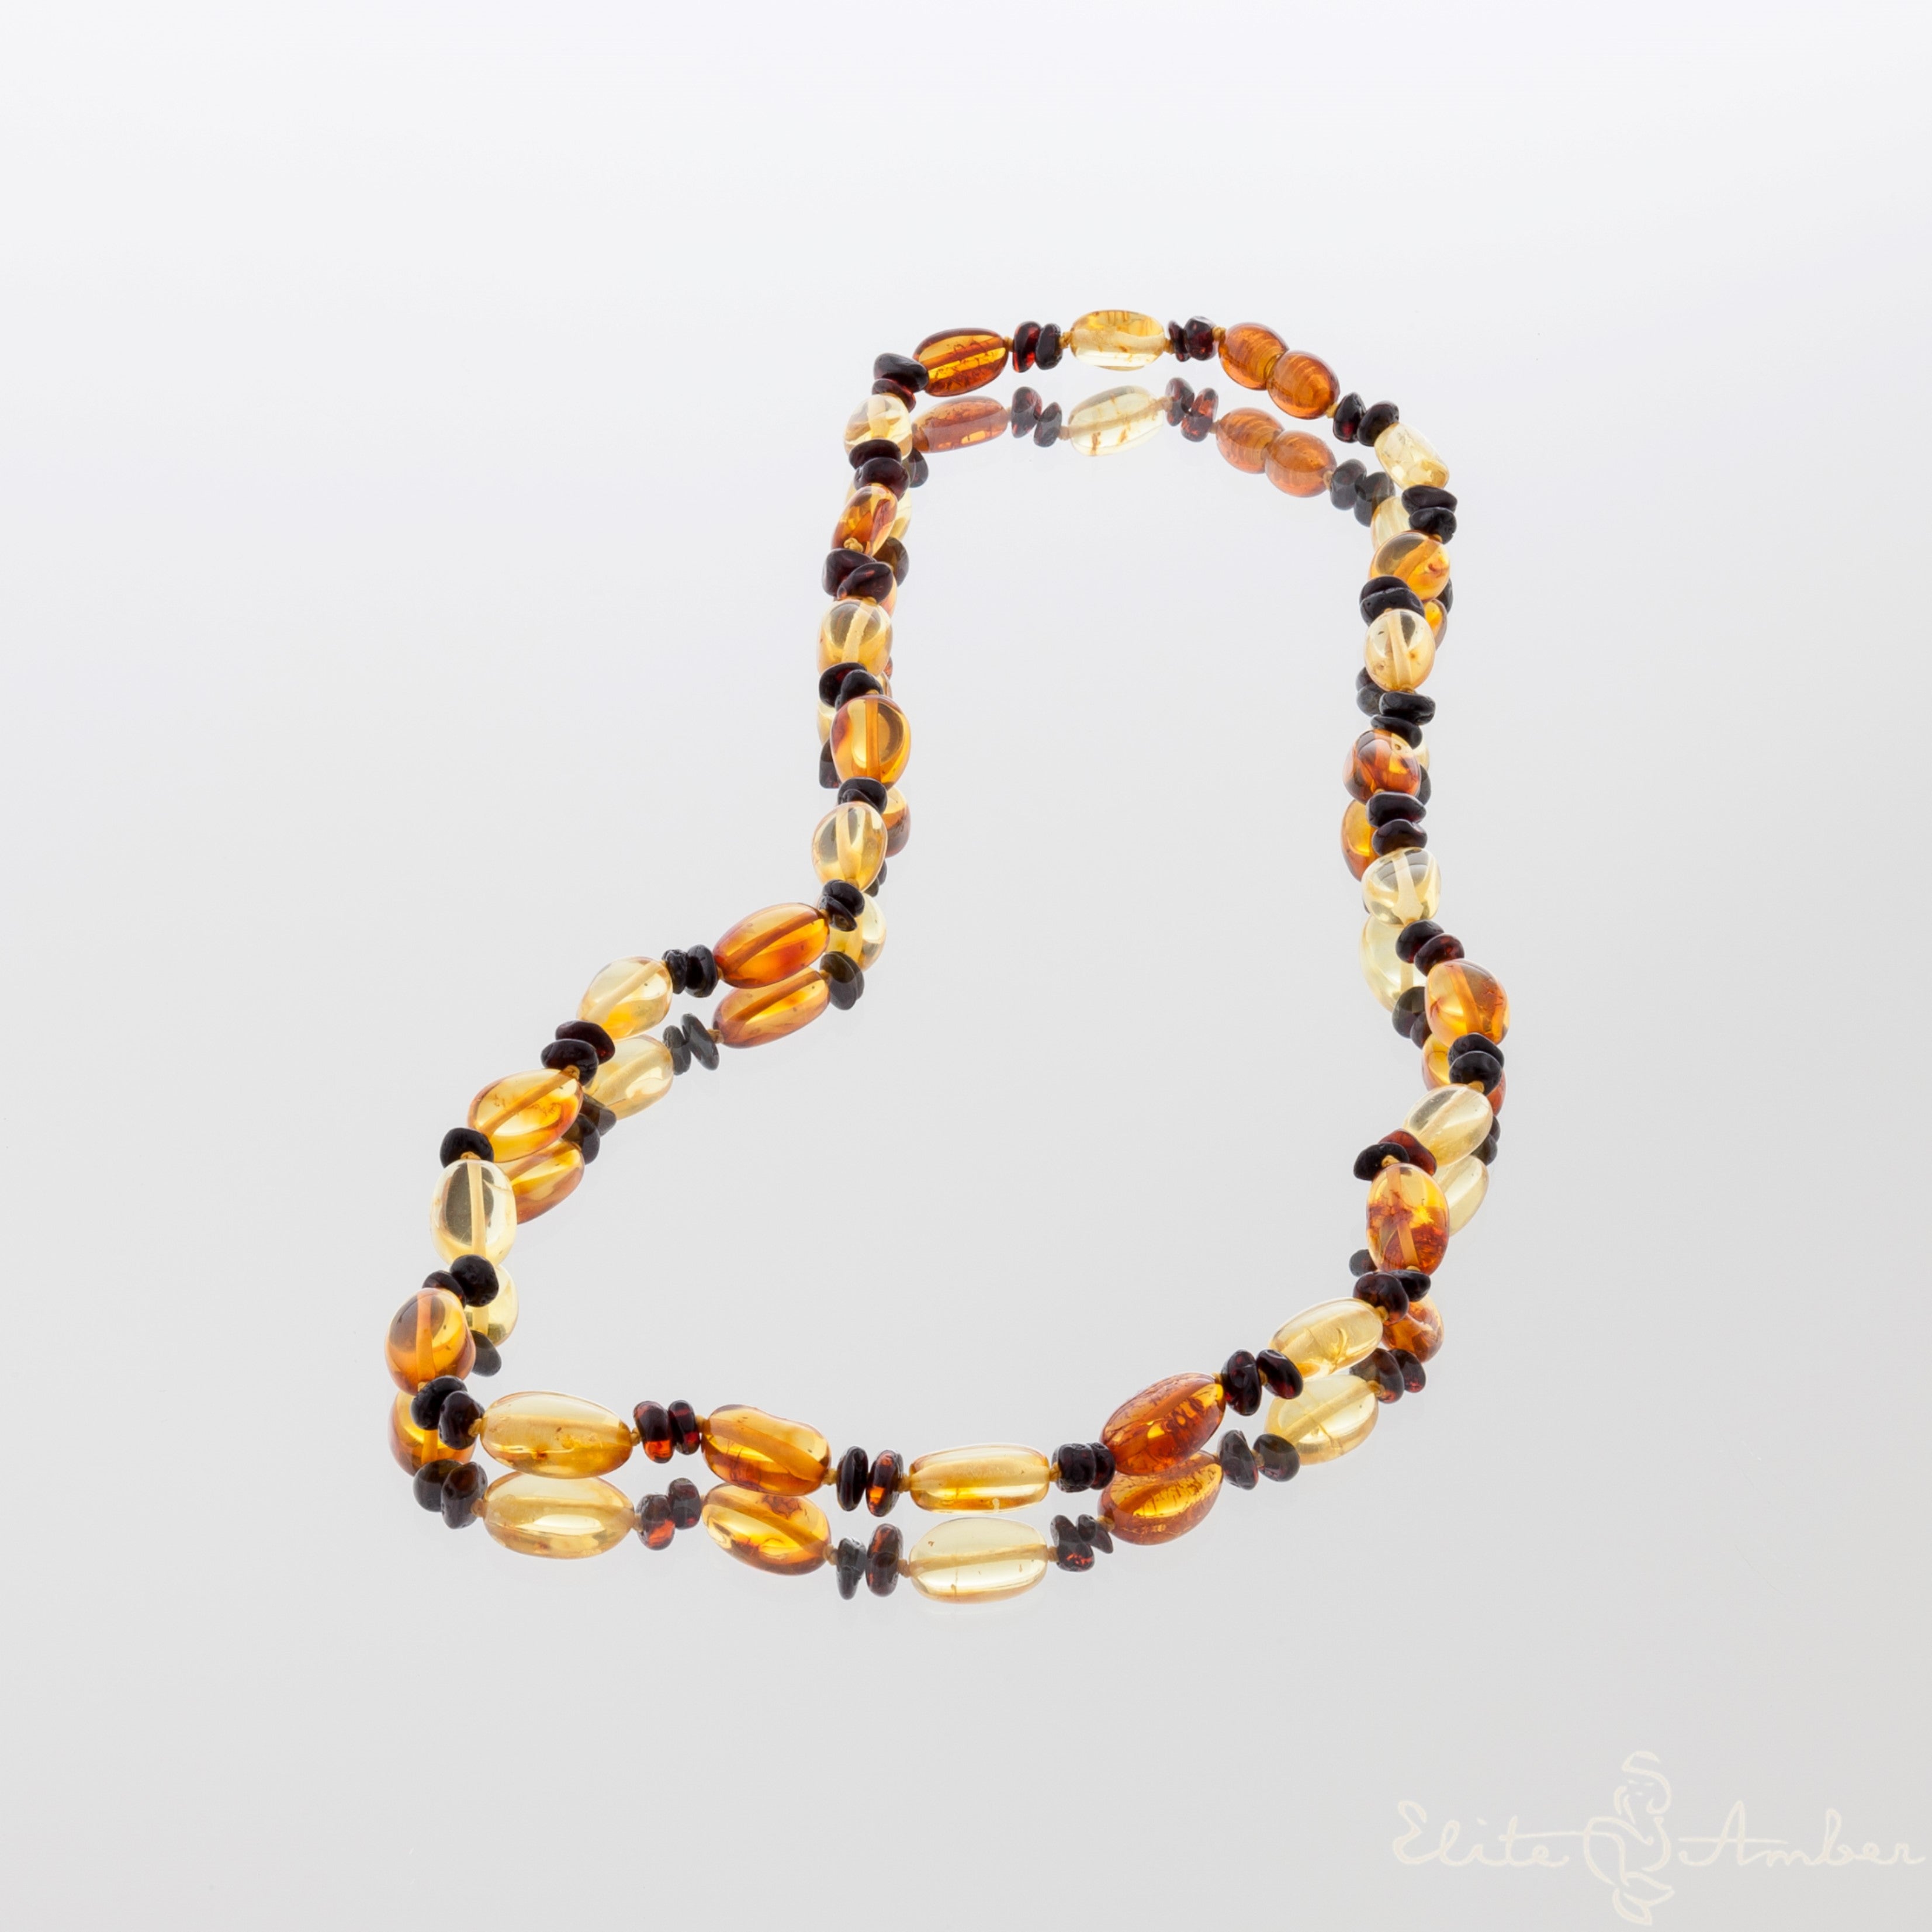 Amber necklace "Lemon cognac pebbles"